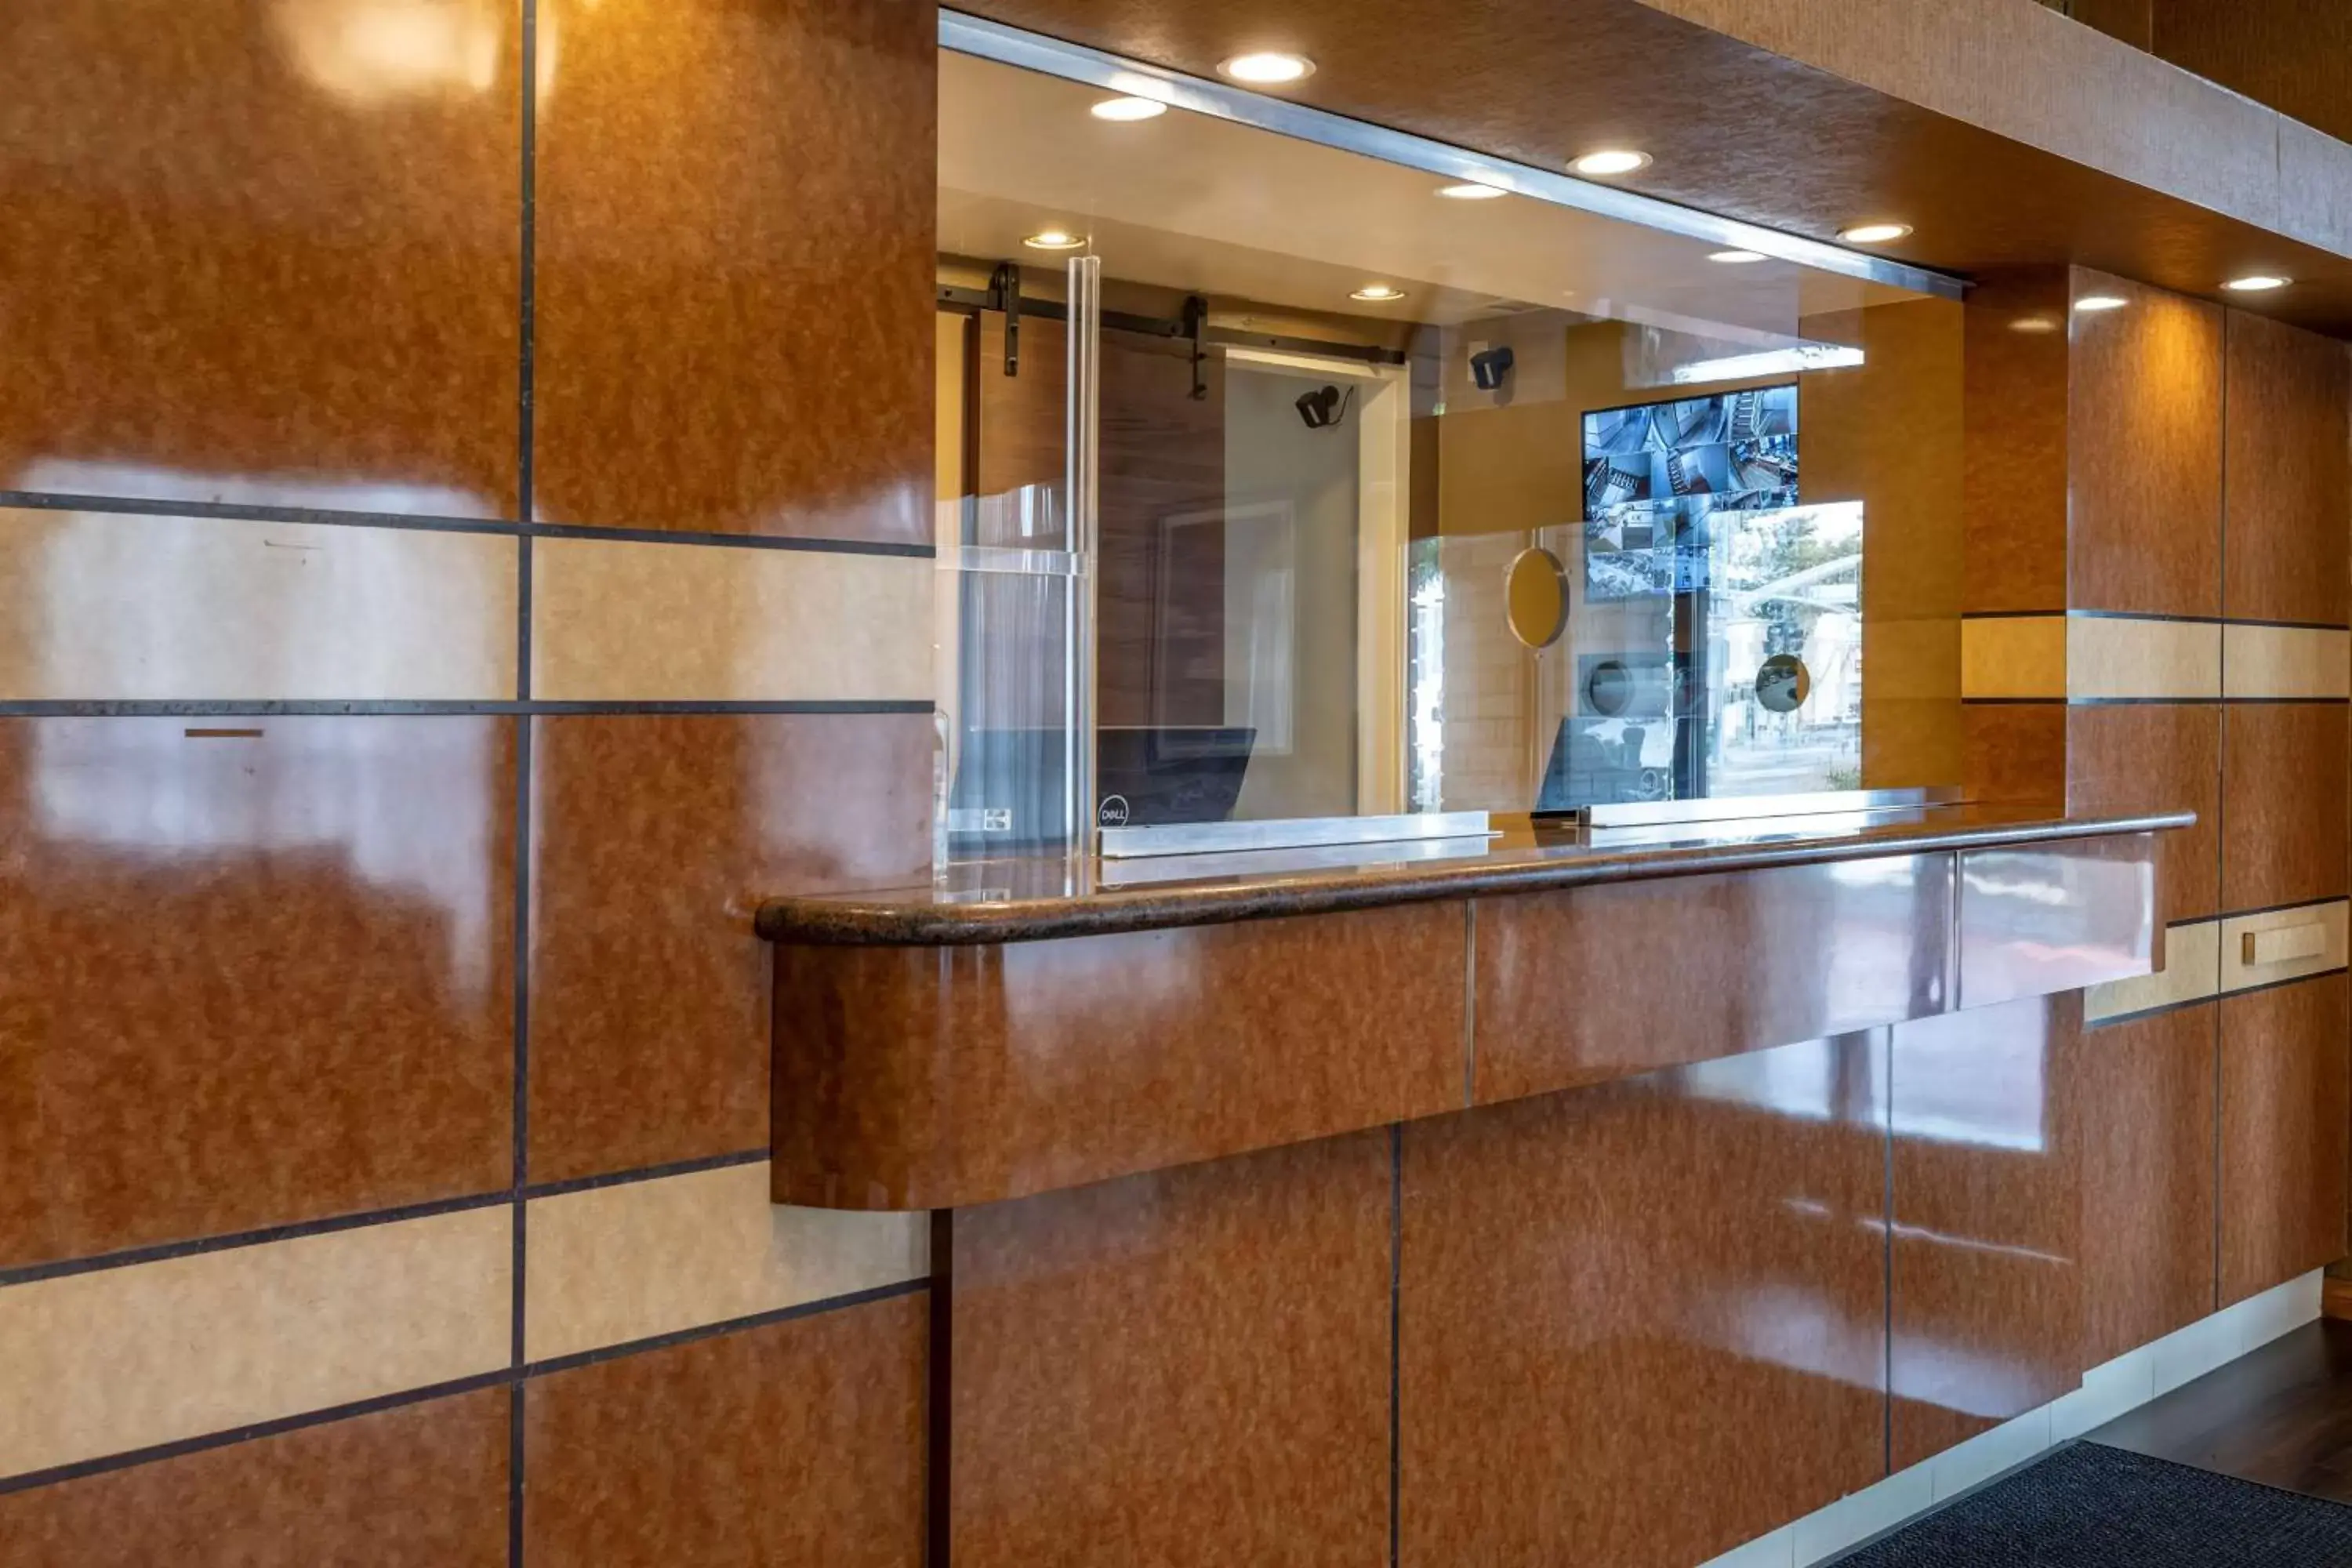 Lobby or reception, Bathroom in Best Western Plus South Bay Hotel